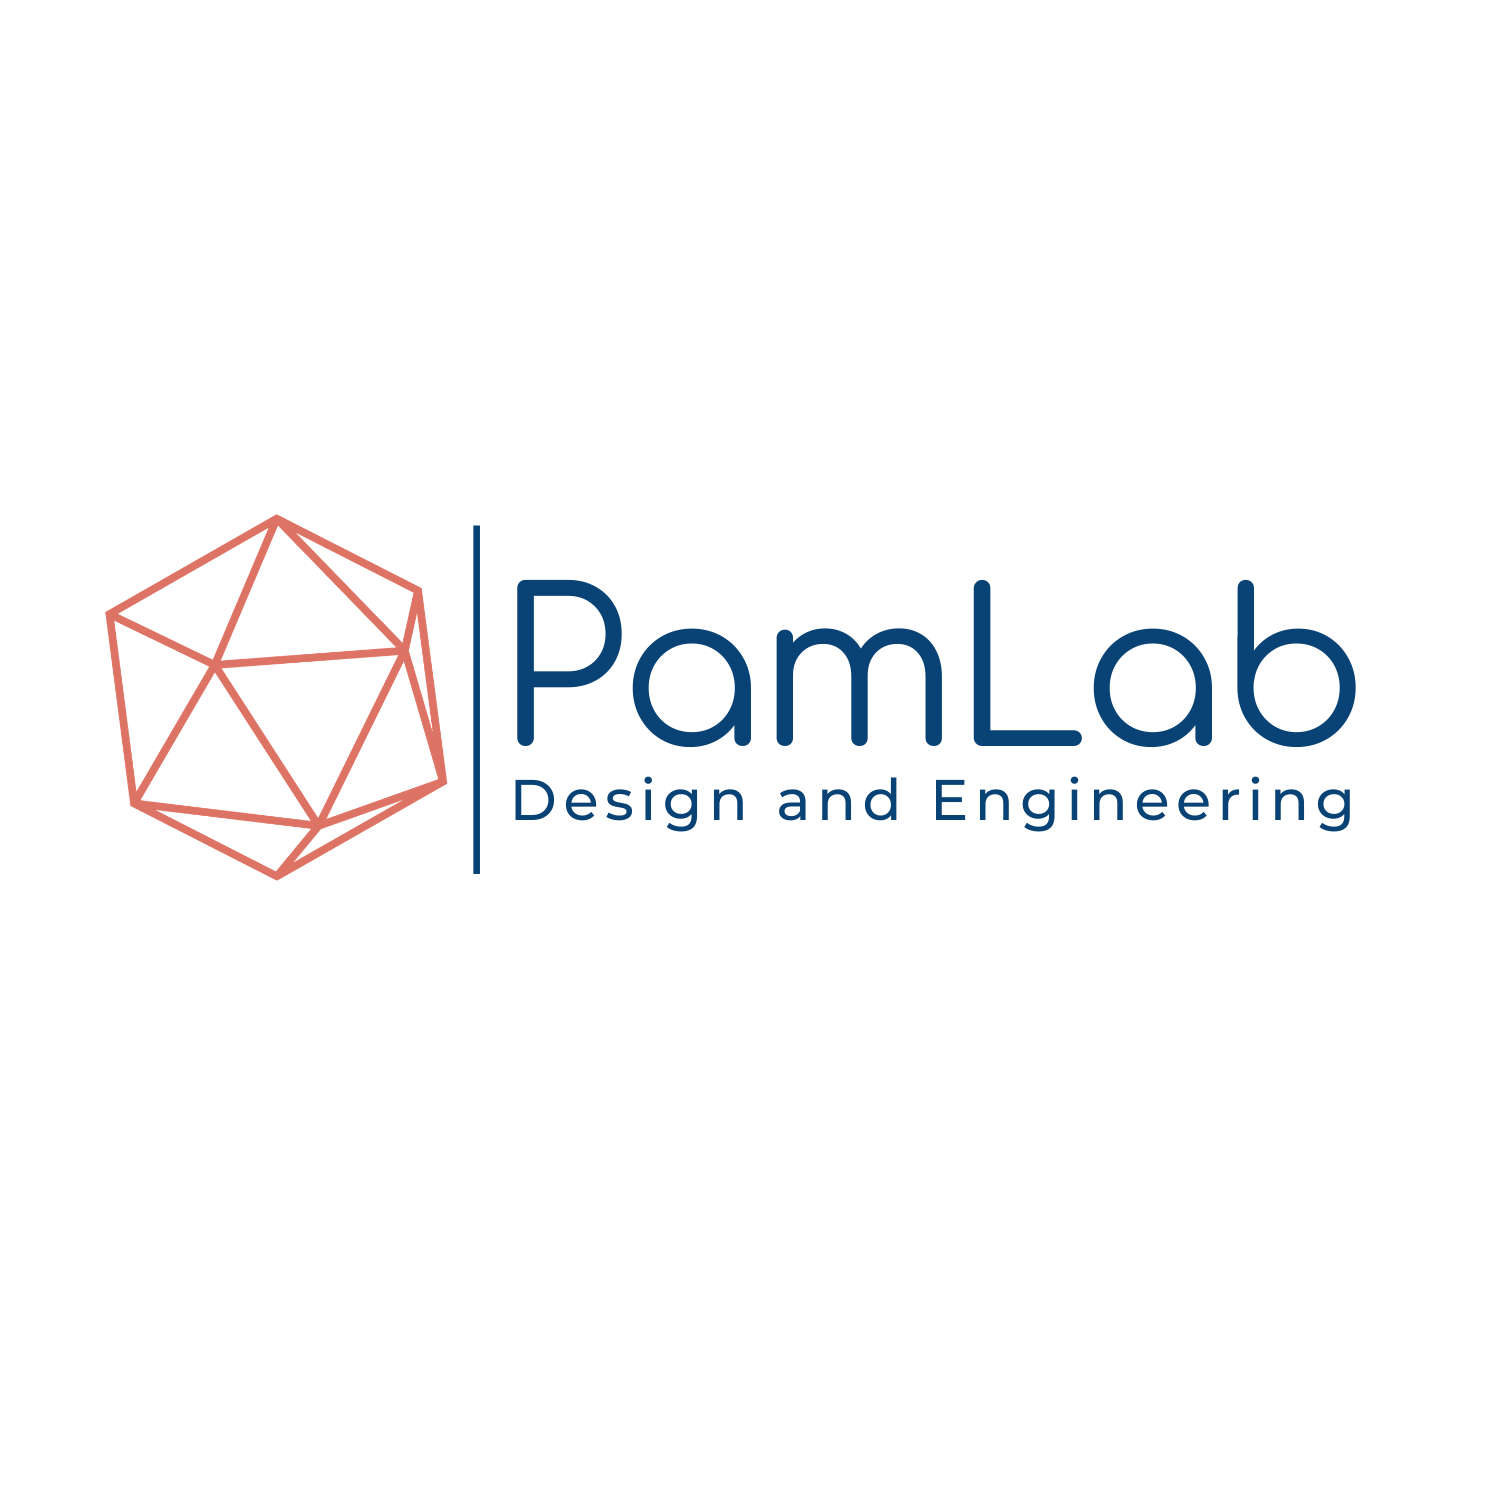 PamLab Design and Engineering